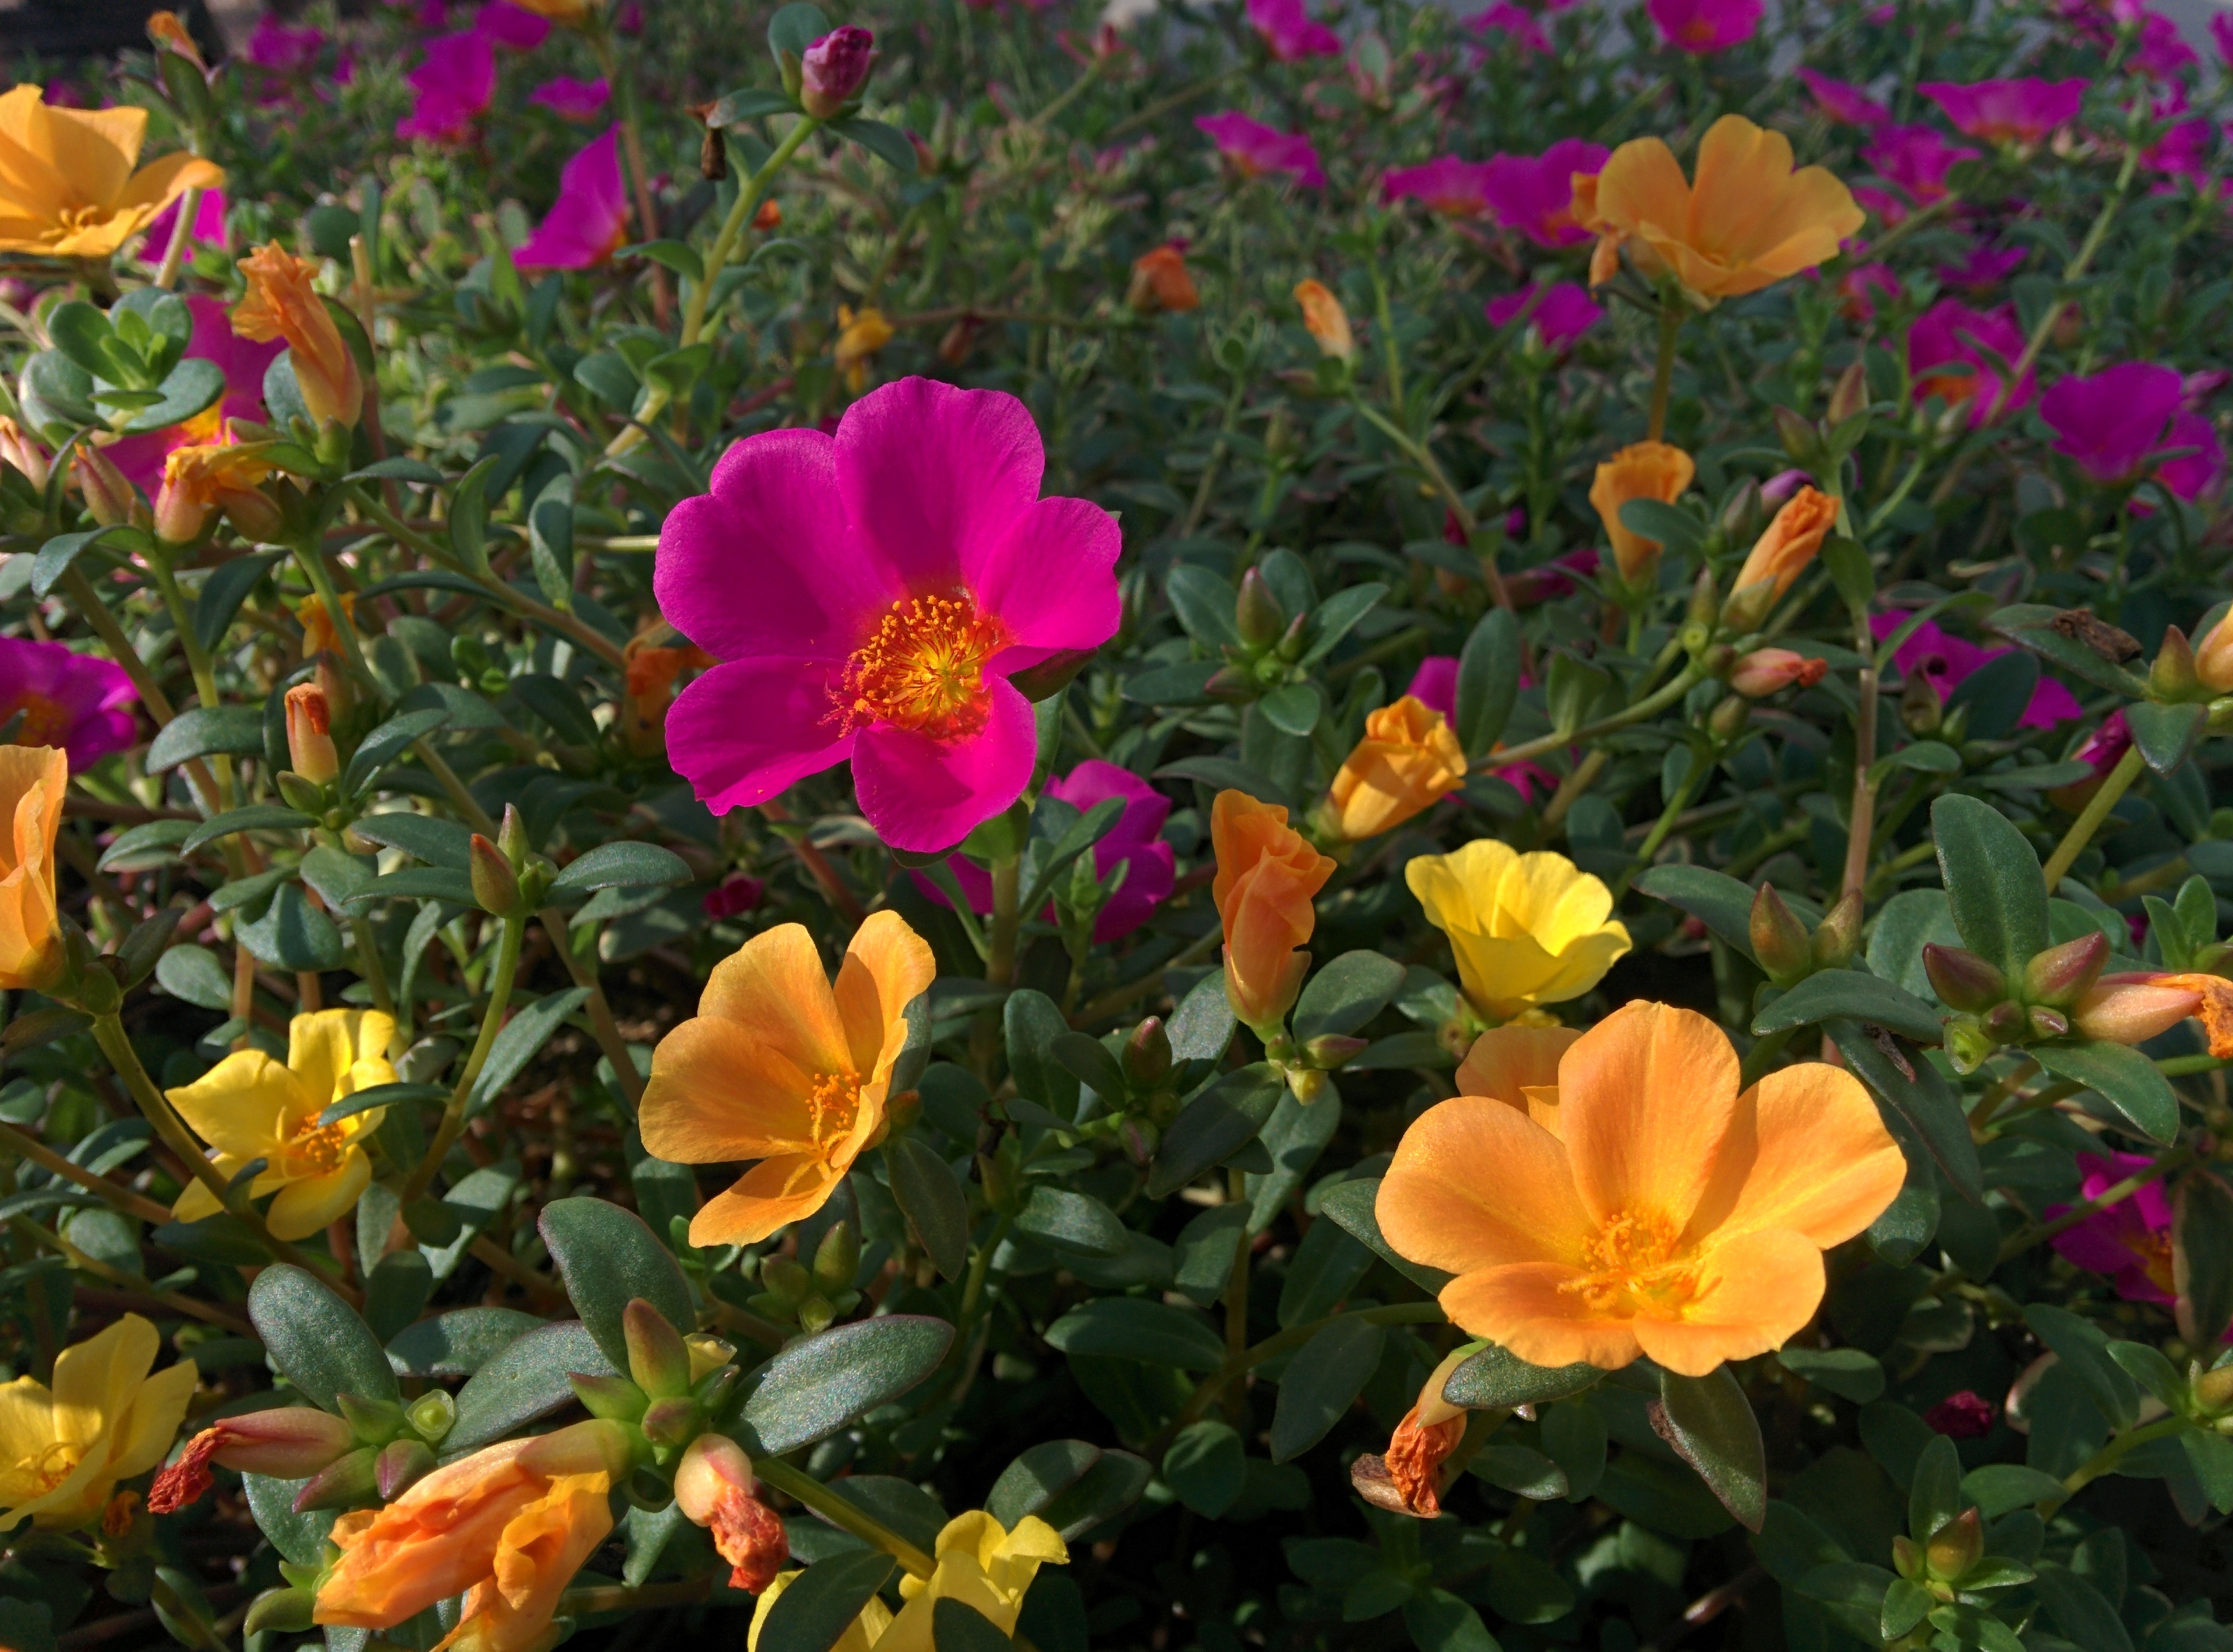 IMG_20150903_155005.jpg 금산인삼랜드의 화려한 채송화... 붉은 꽃, 노란 꽃